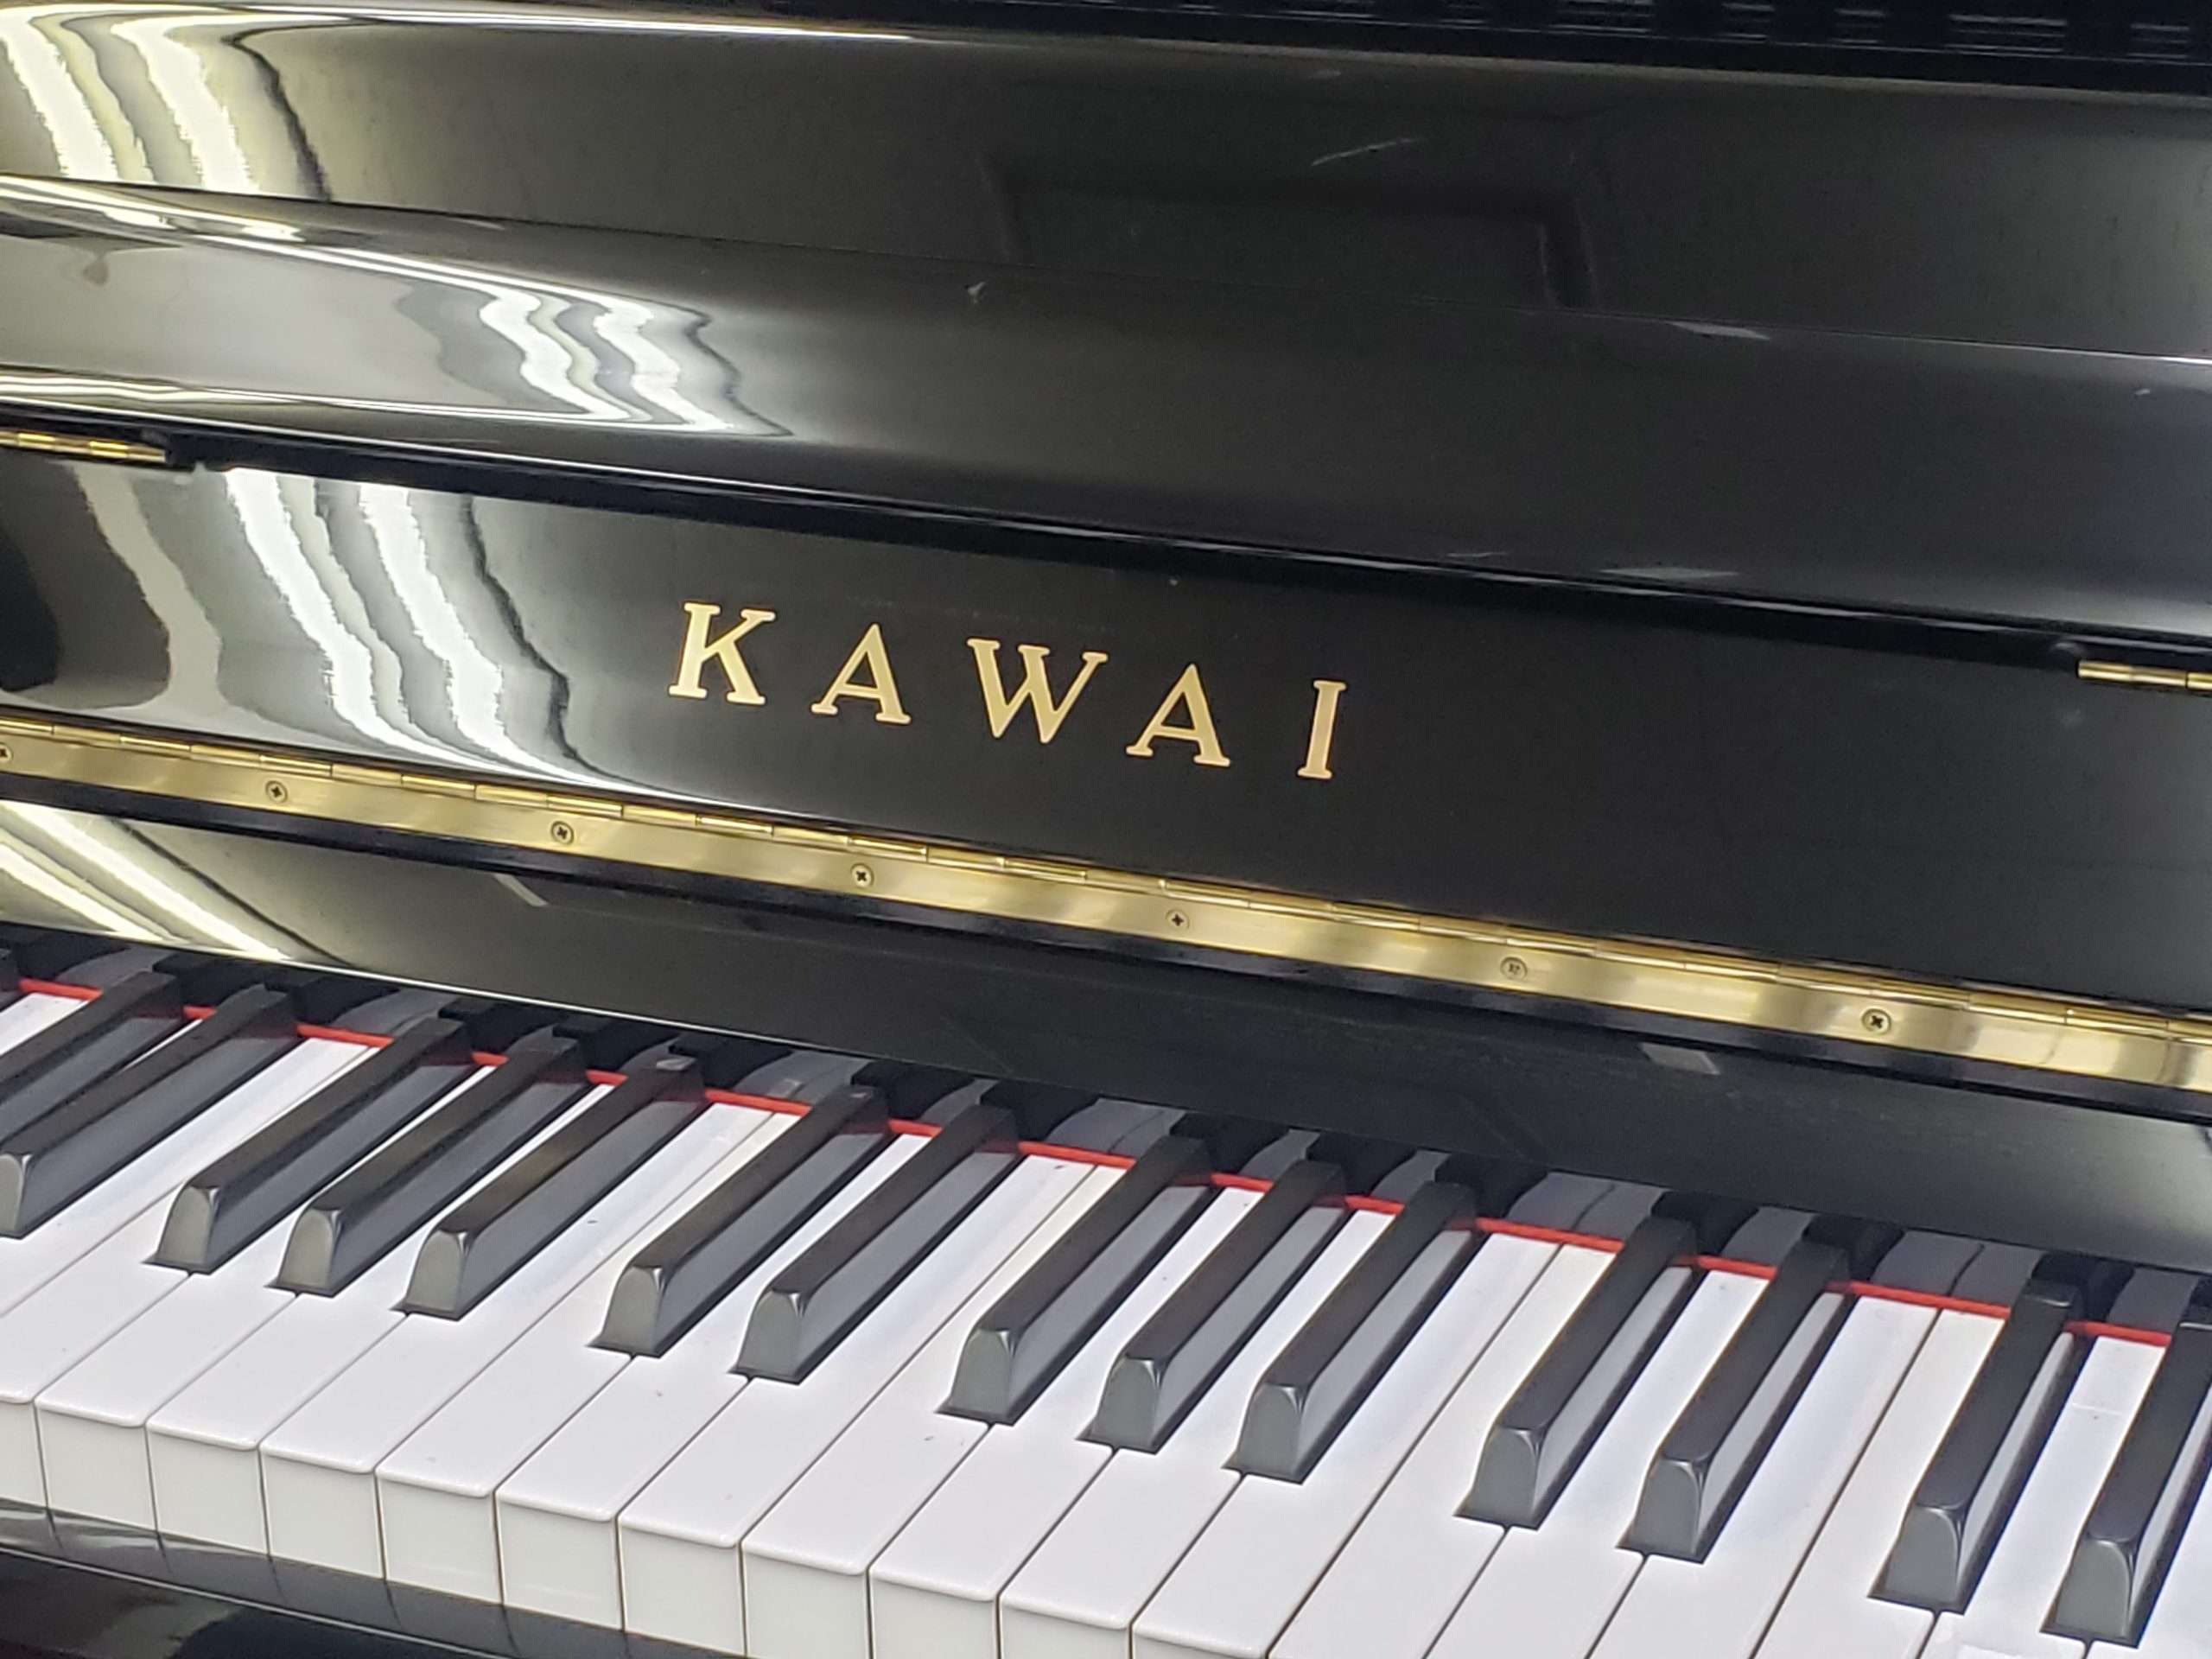 カワイ中古アップライトピアノ KAWAI BS-1A